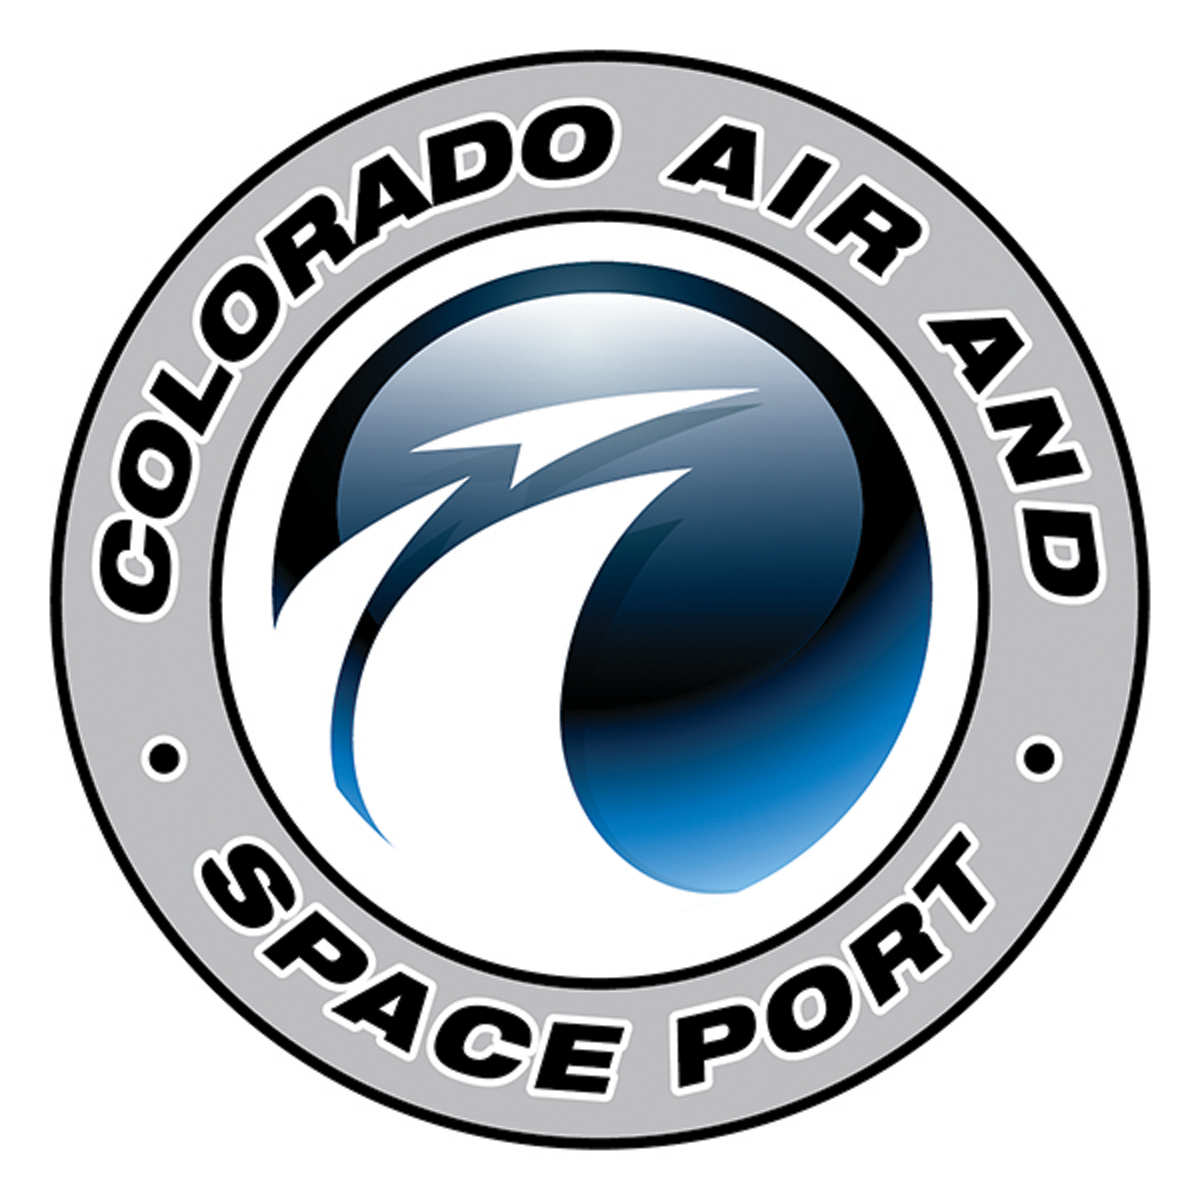 Colorado Spaceport